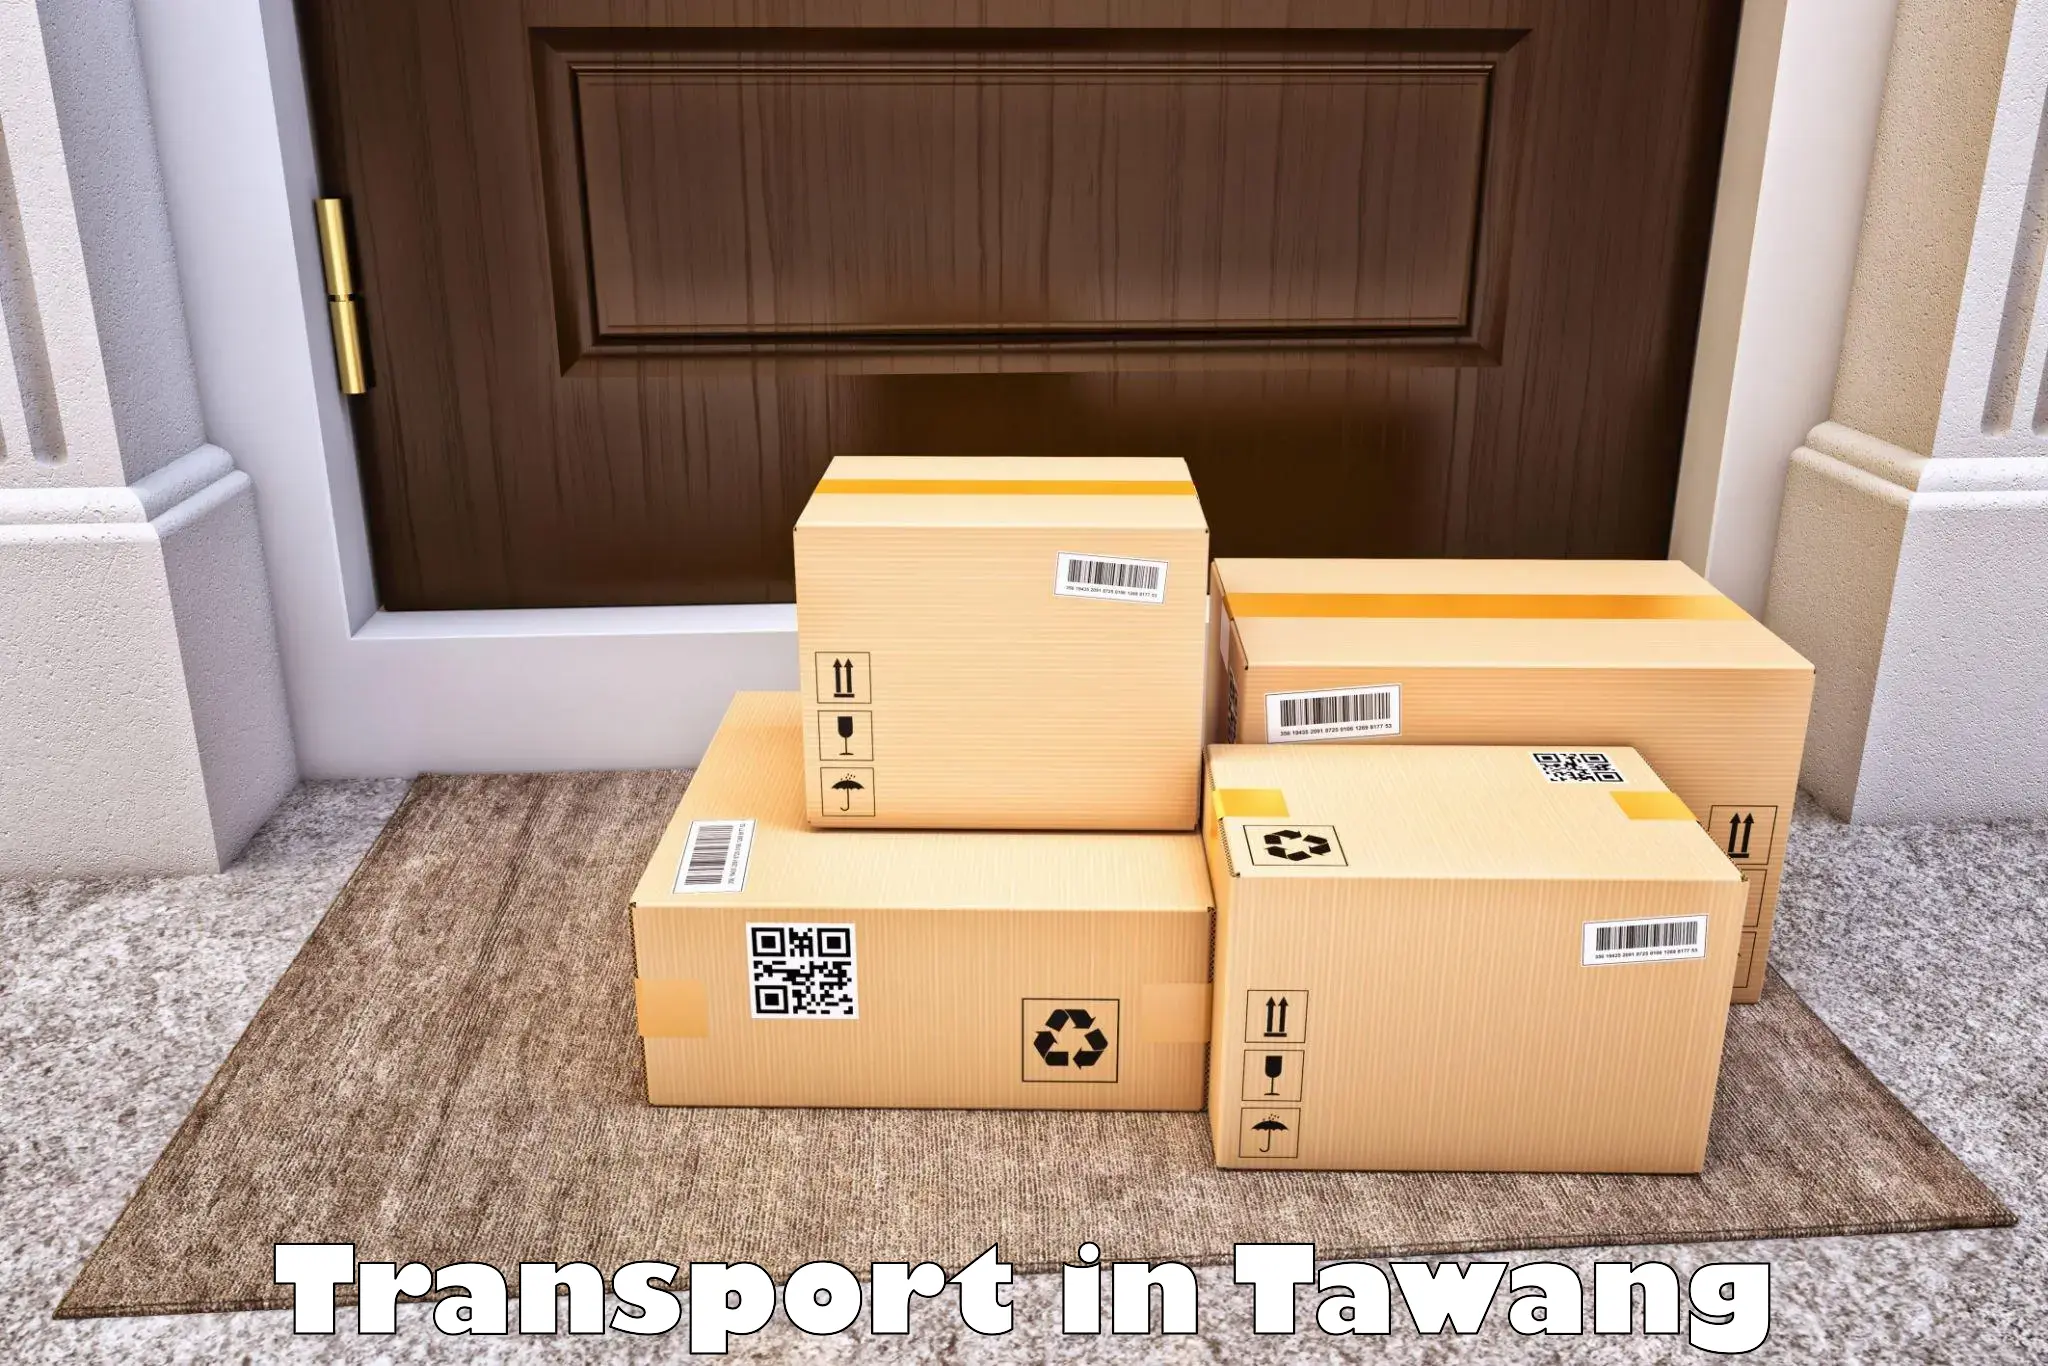 Shipping partner in Tawang